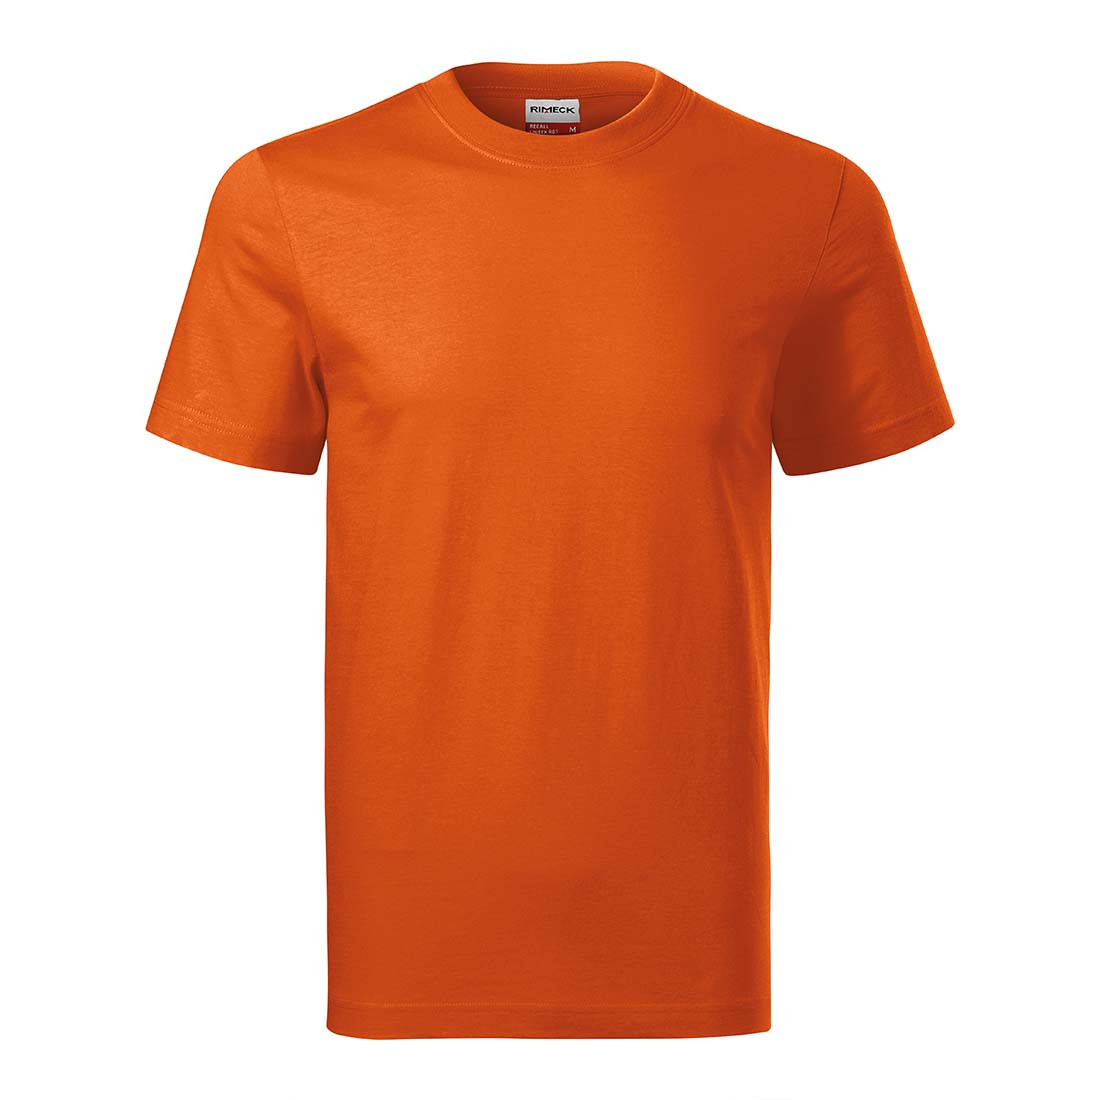 Tee-shirt unisex RECALL - Les vêtements de protection